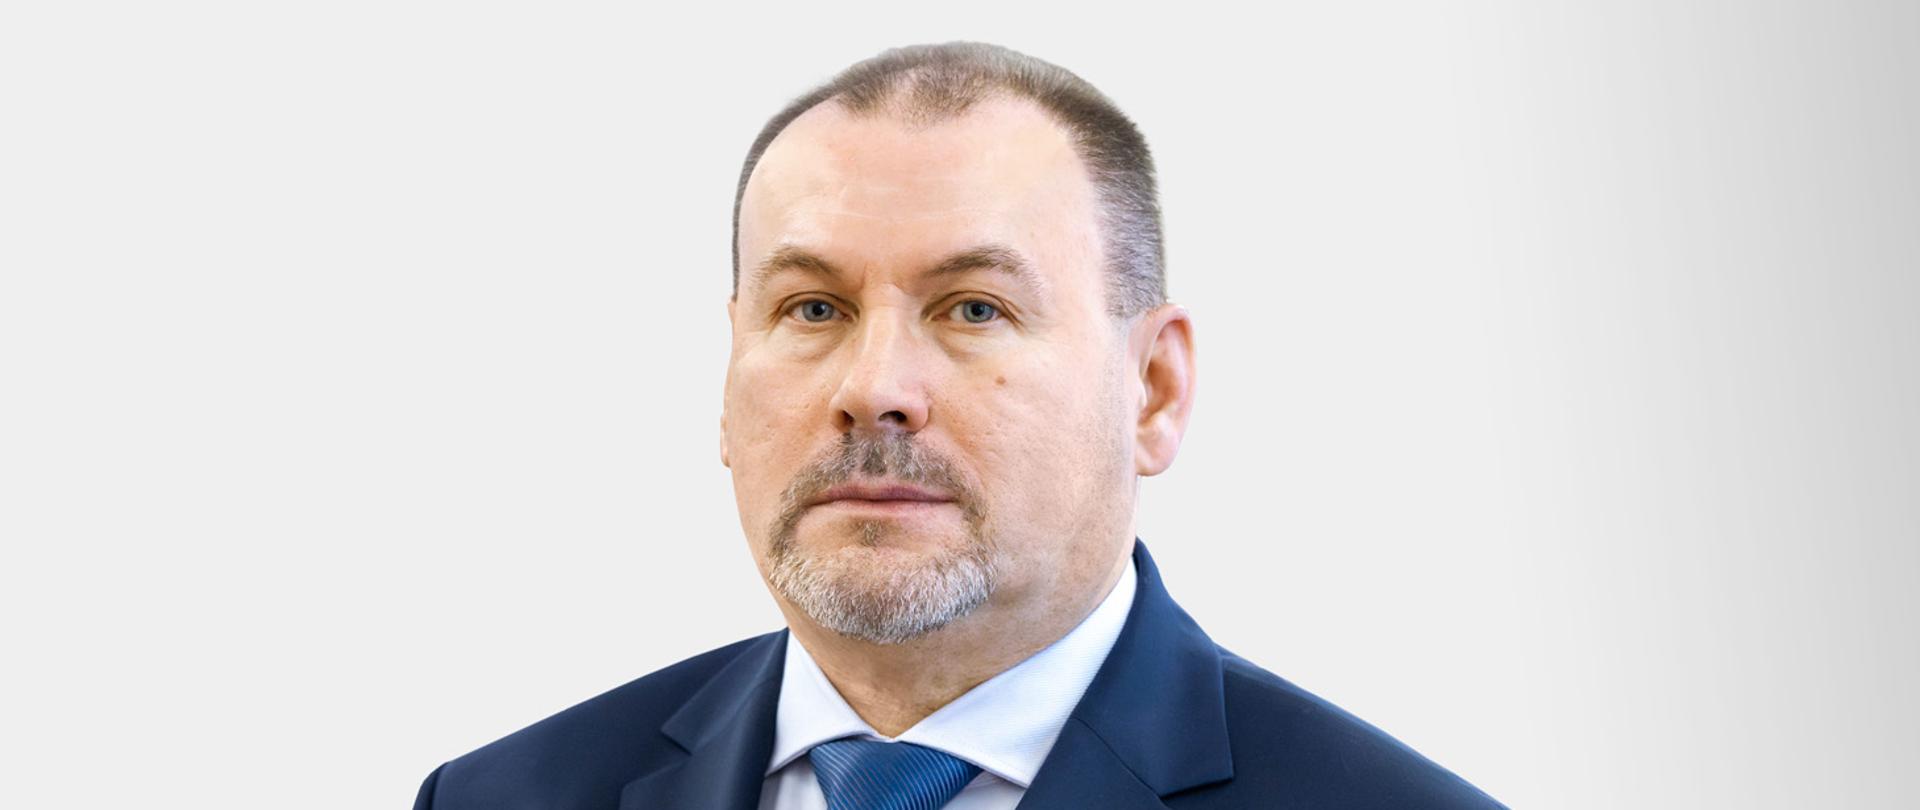 Podsekretarz Stanu, Zastępca Szefa Krajowej Administracji Skarbowej Zbigniew Stawicki